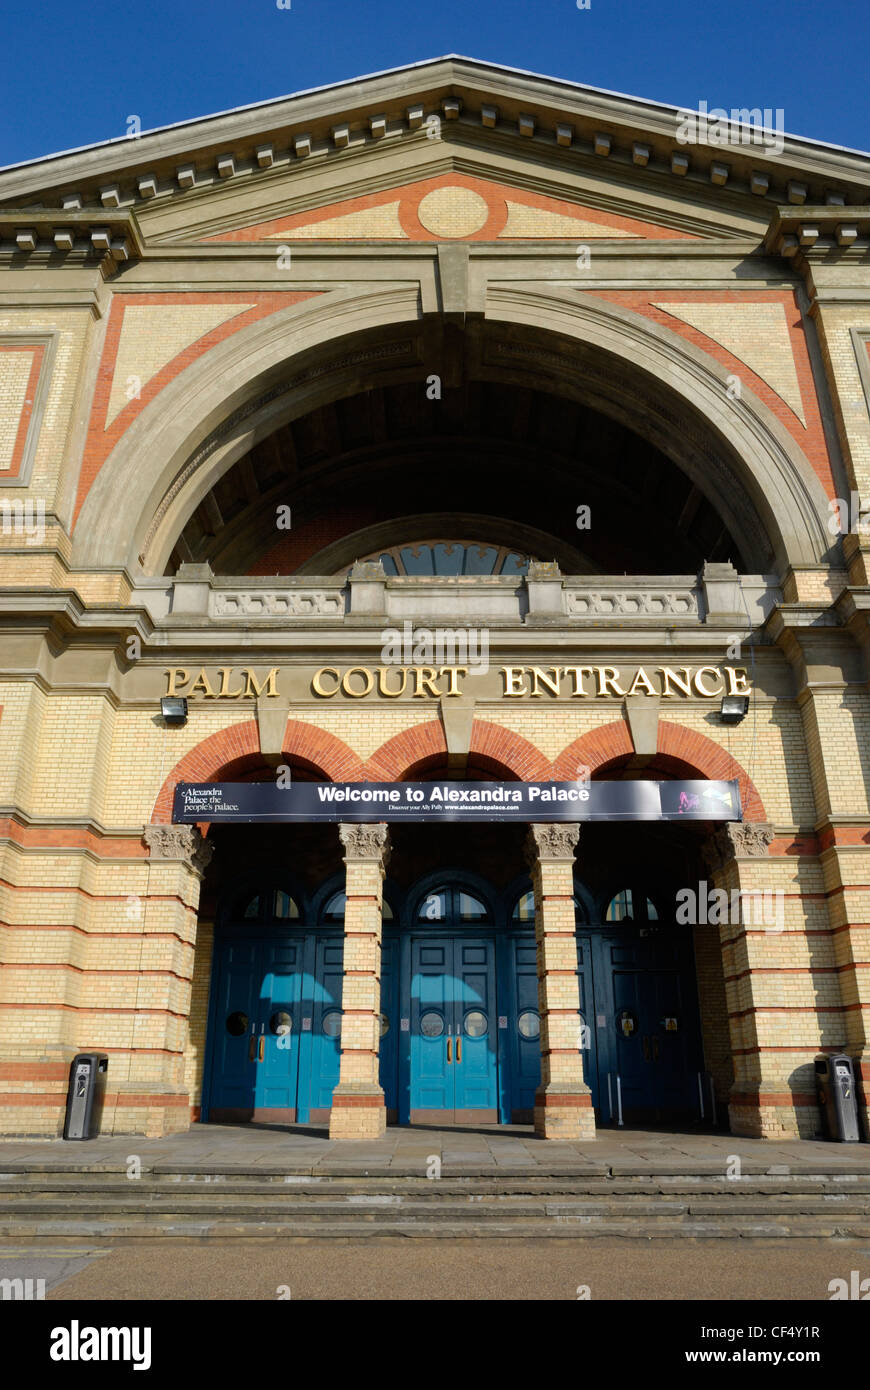 Palm Court Entrance, dem Haupteingang in Alexandra Palace eröffnet ursprünglich 1873 als "The Peoples Palace", eine ikonische Lond Stockfoto